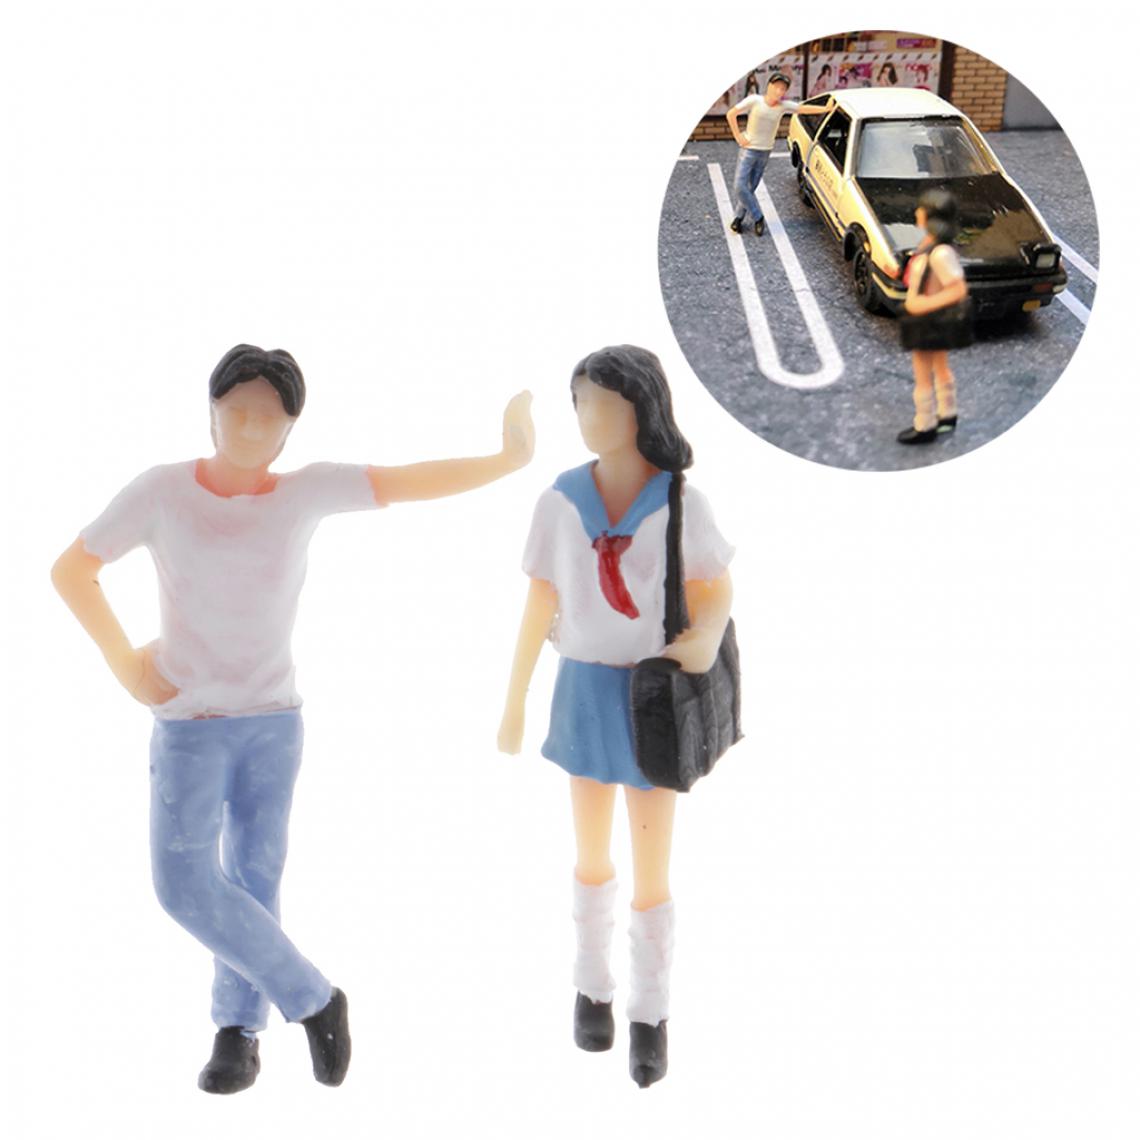 marque generique - 1:64 Chiffres Diorama Uniforme Fille Mode Japonais école élèves Figures - Accessoires maquettes